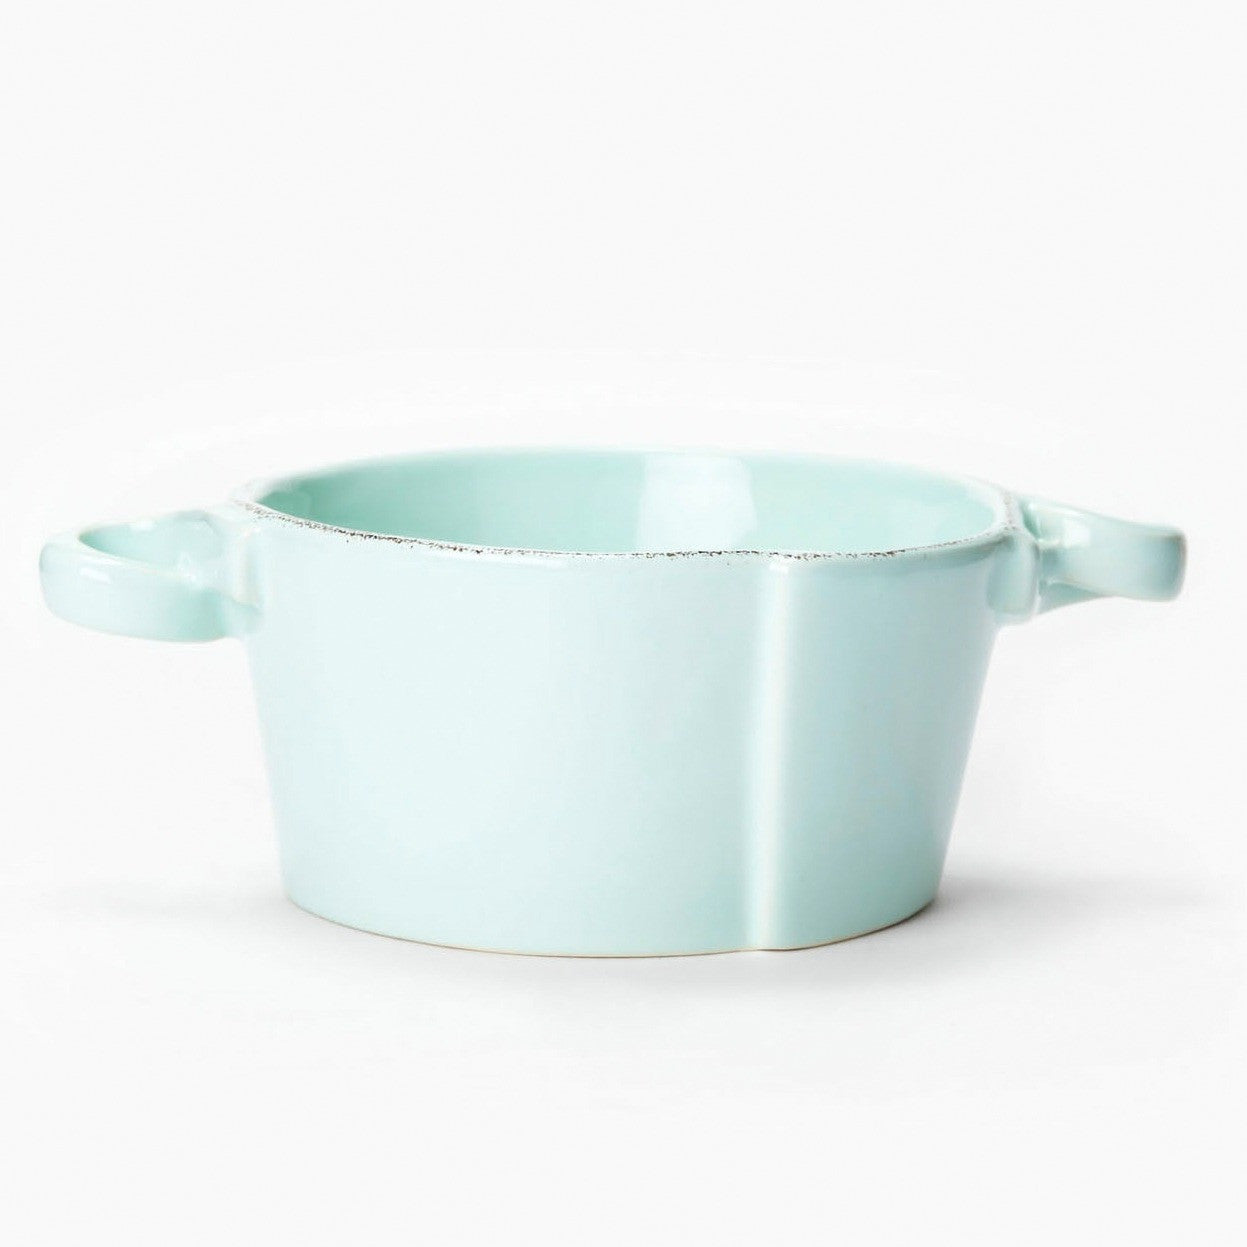 VIETRI: Lastra Aqua Small Handled Bowl - Artistica.com